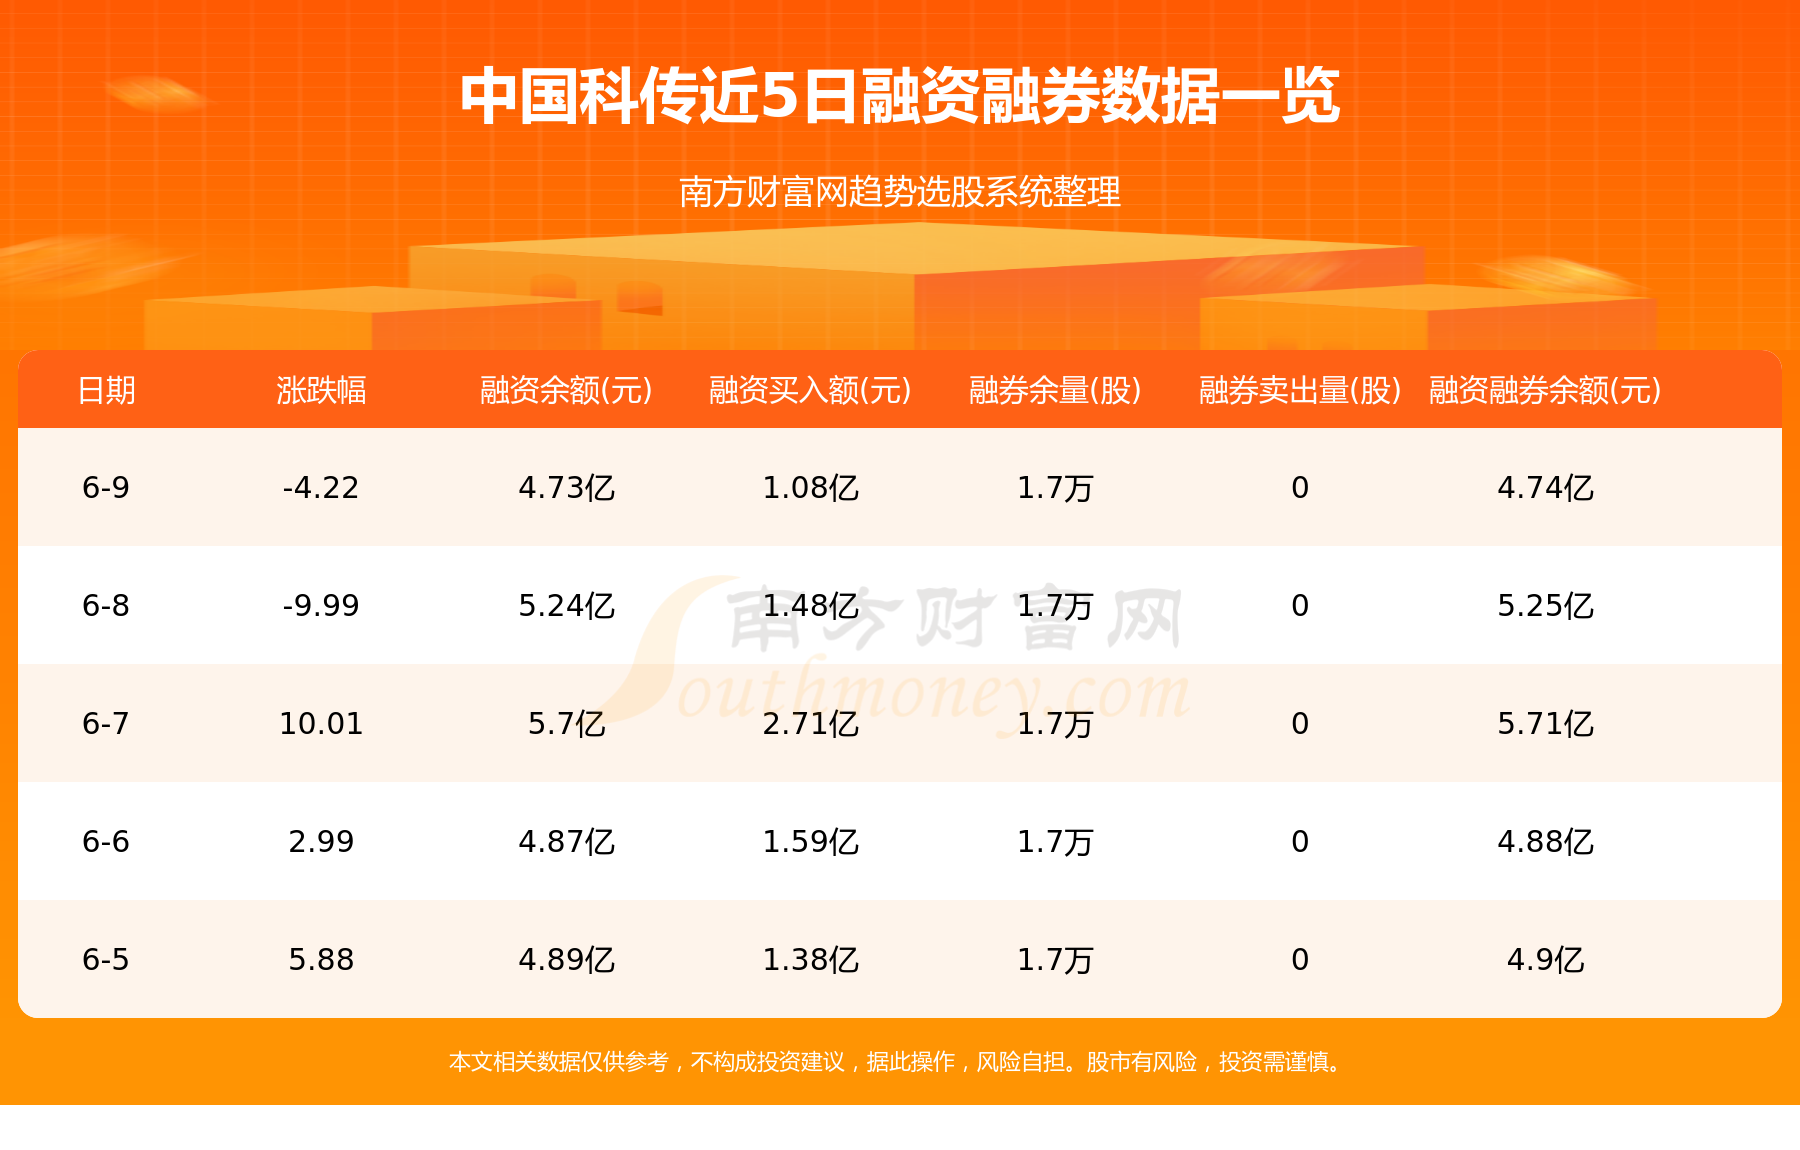 中国科传主力动向：6月9日净流出1.04亿元